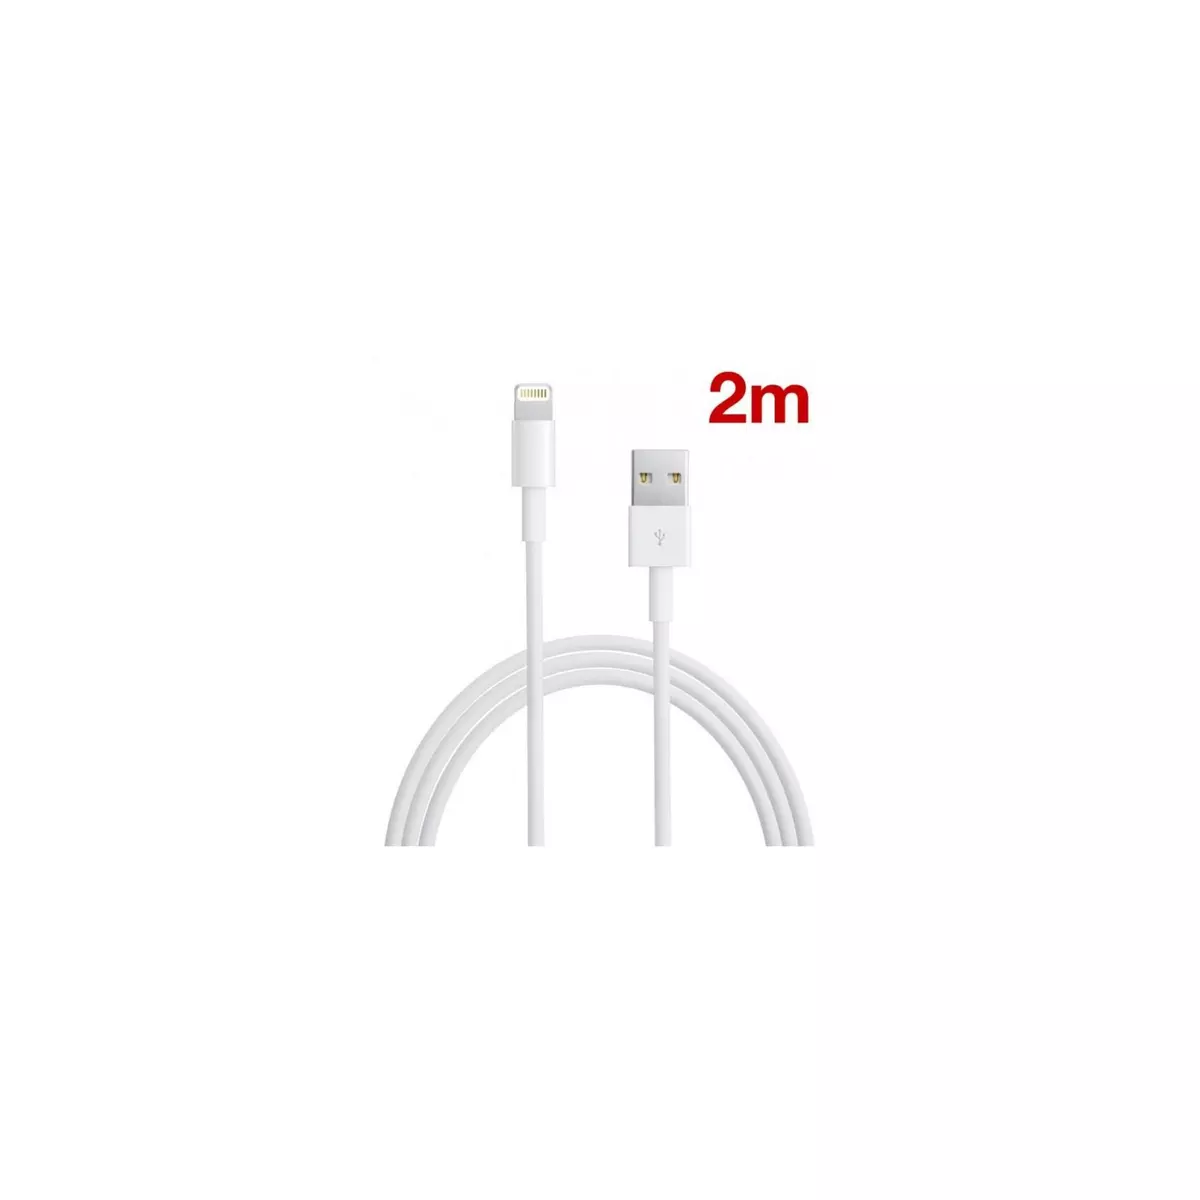  Câble Ligthning 2m pour pour iPhone 6/ 6S/ 6 Plus/ 6S Plus origine data et charge